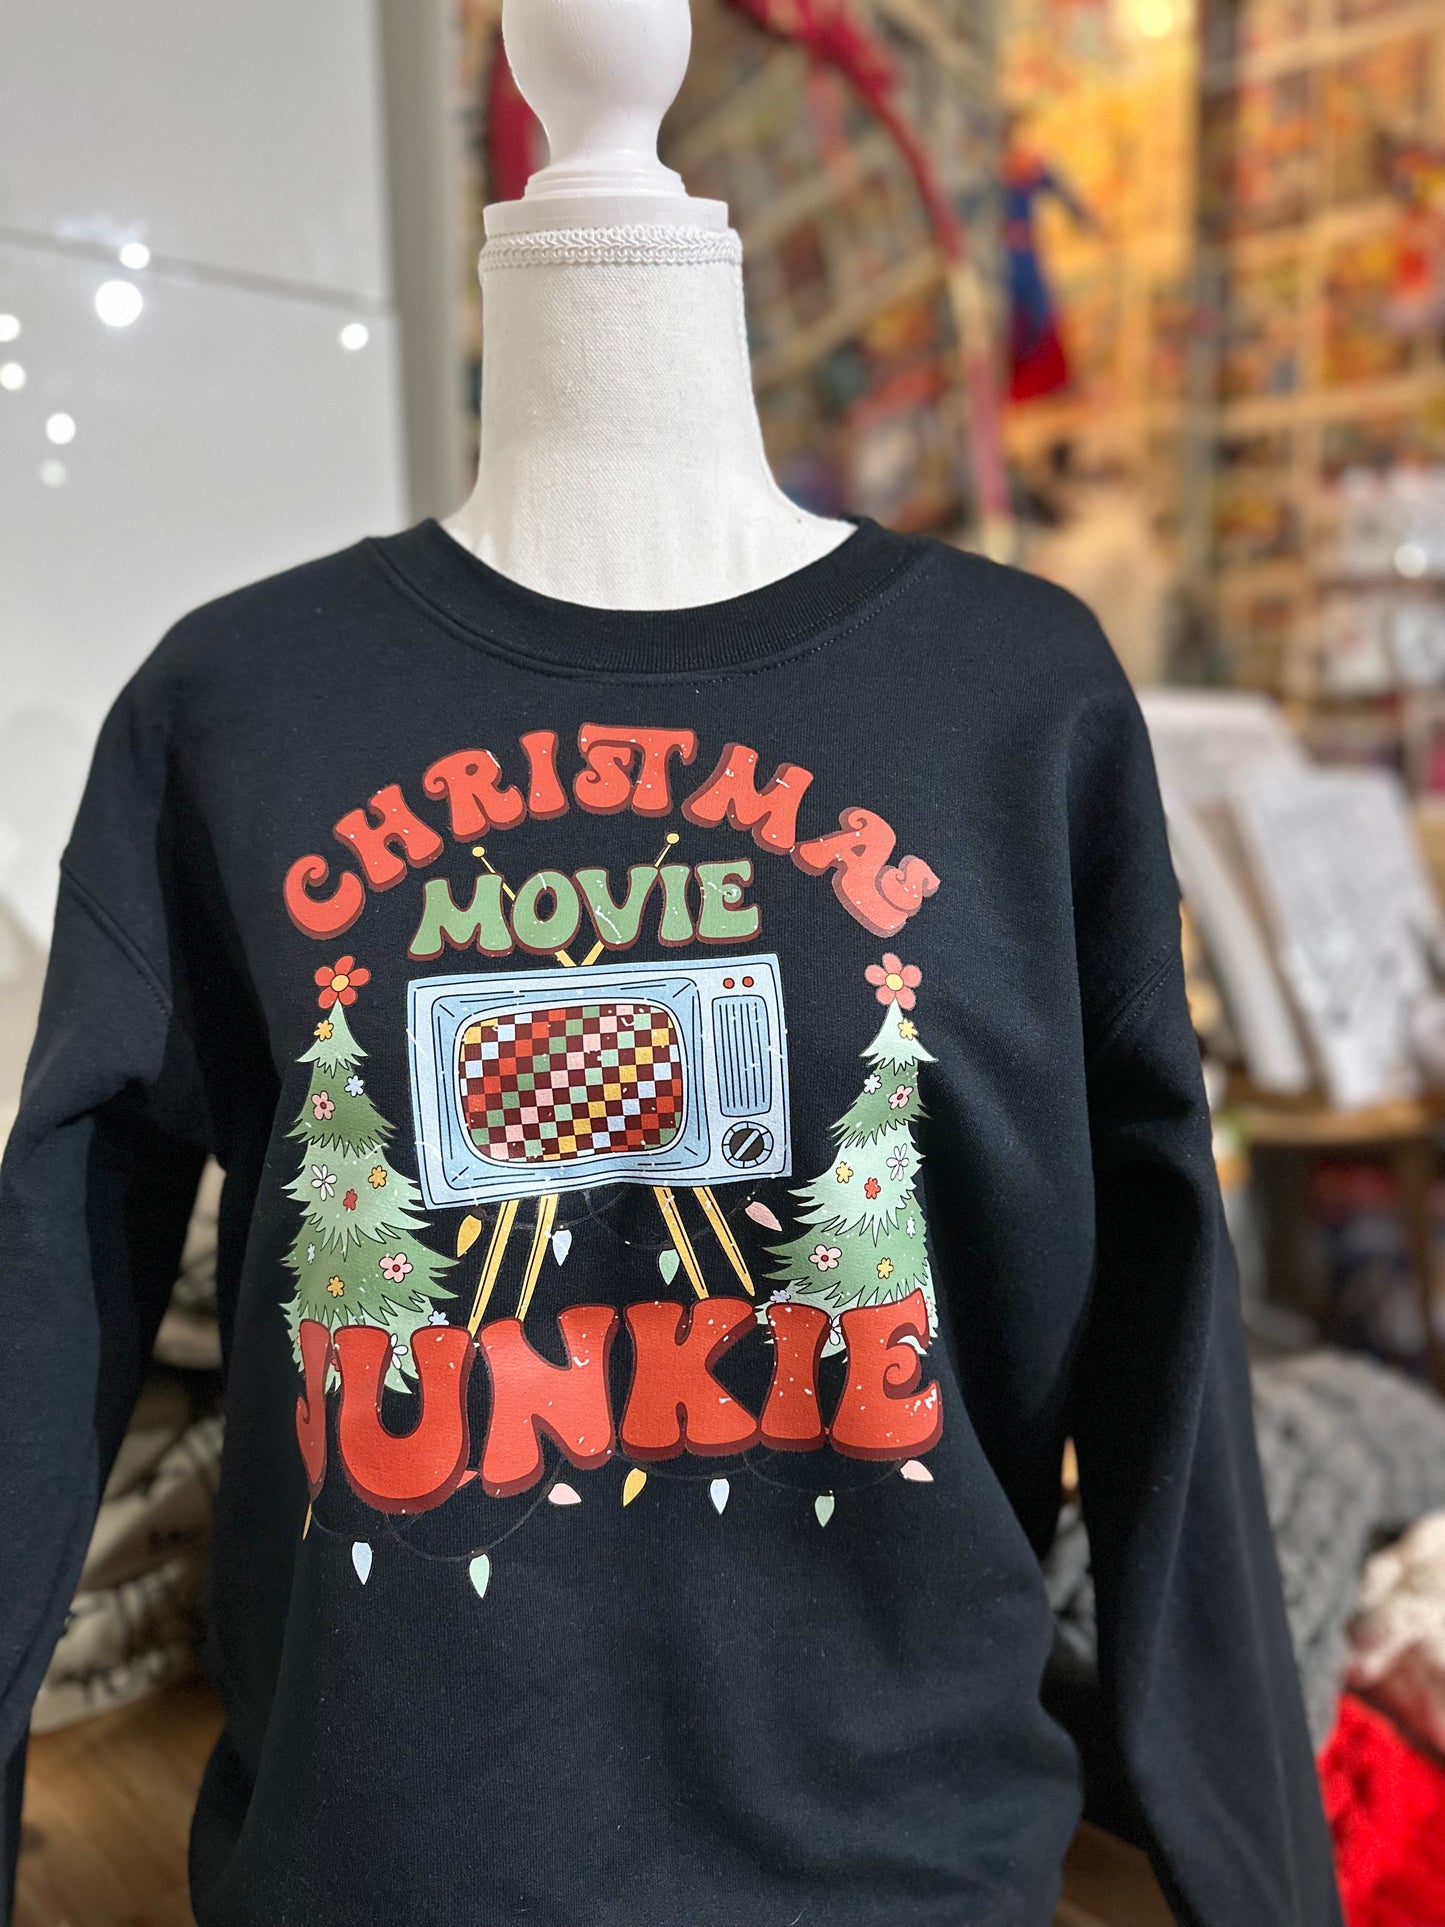 Christmas movie junkie crewneck